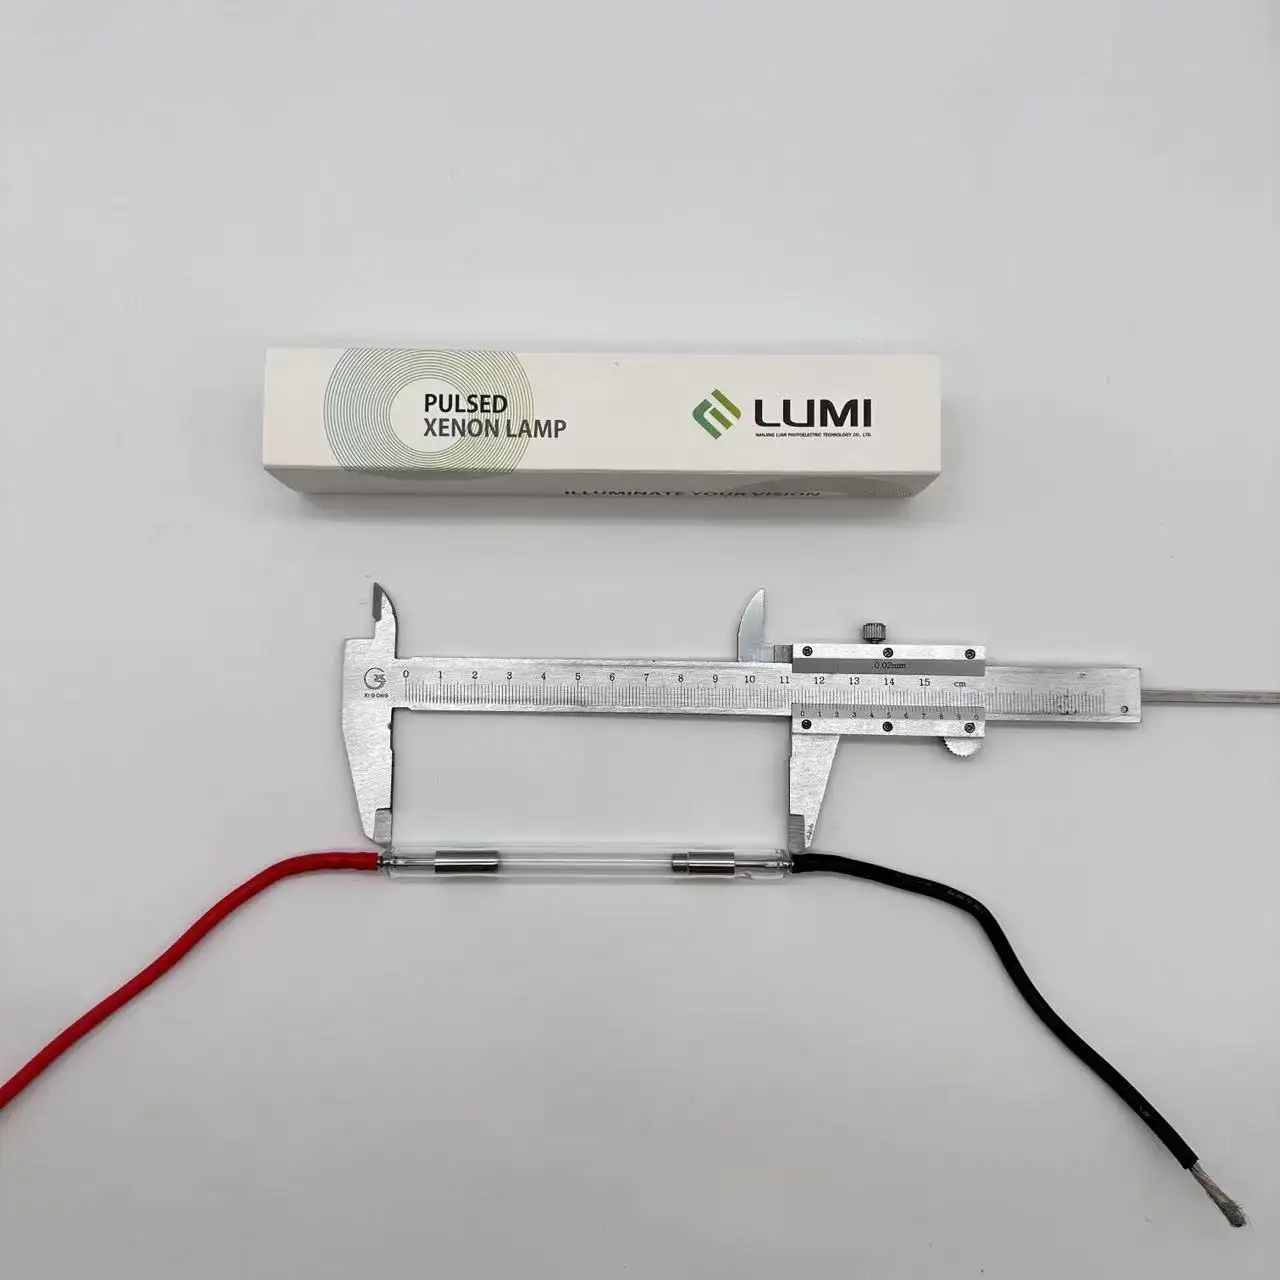 기계 유선용 Lumi 인텐스 펄스 램프, 의료, 레이저 펌핑, 뷰티 머신 제모, P1741 9*50*115